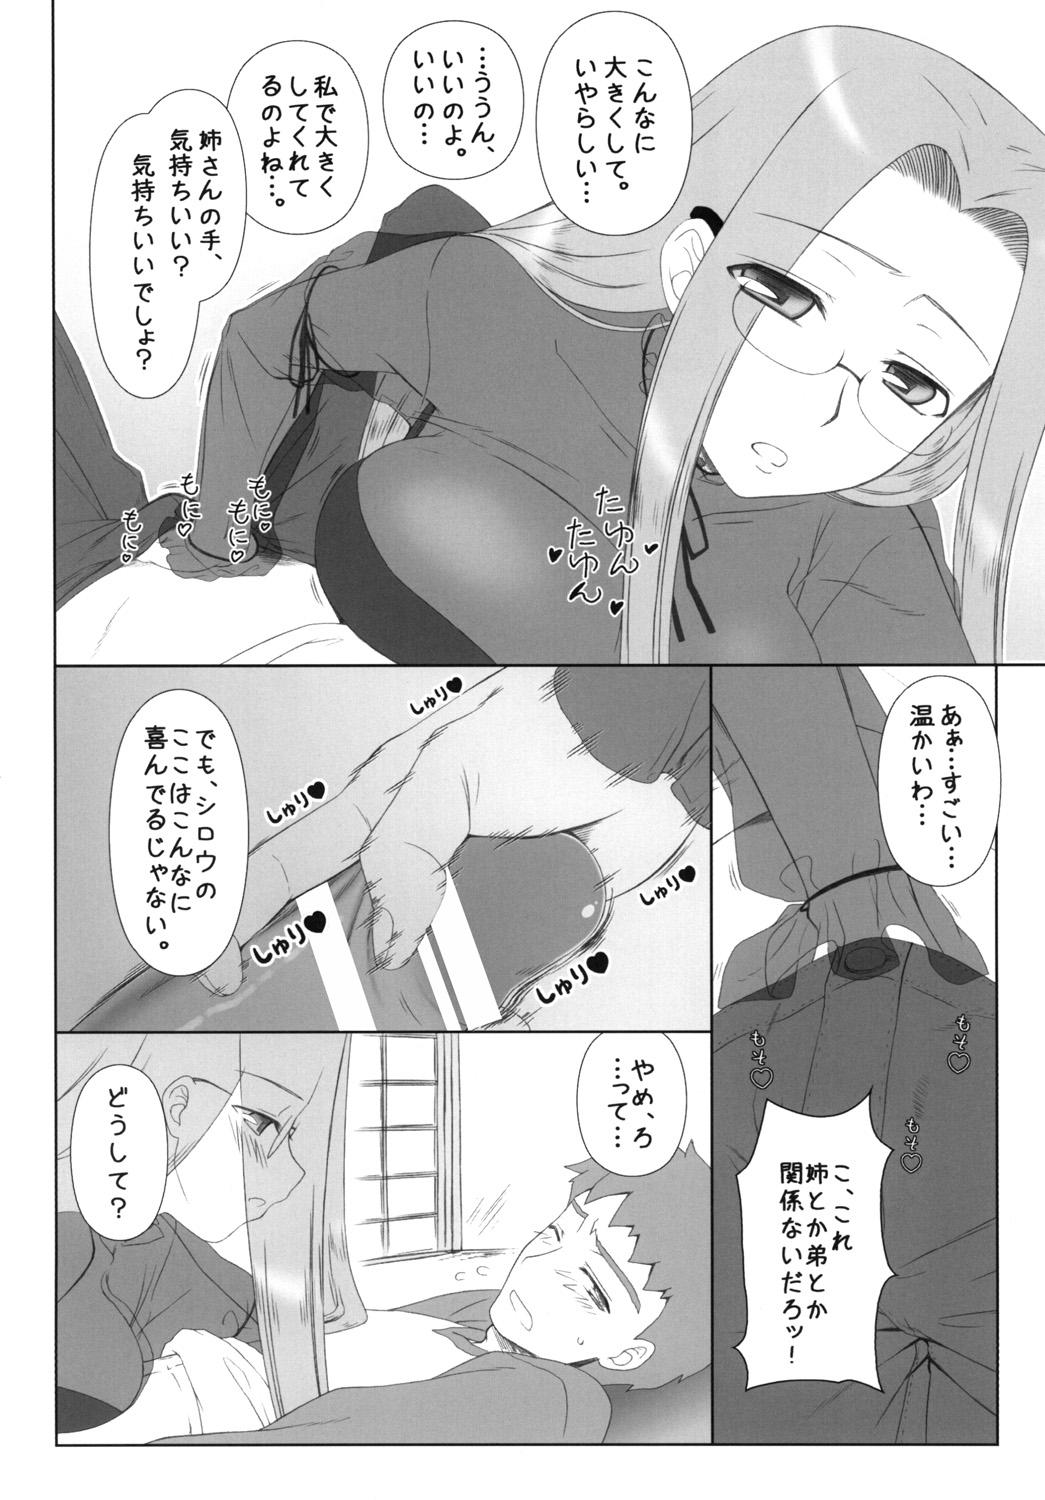 Insane Porn Yappari Rider wa Eroi na 8 "Rider, Oneechan ni naru" - Fate stay night Cartoon - Page 5